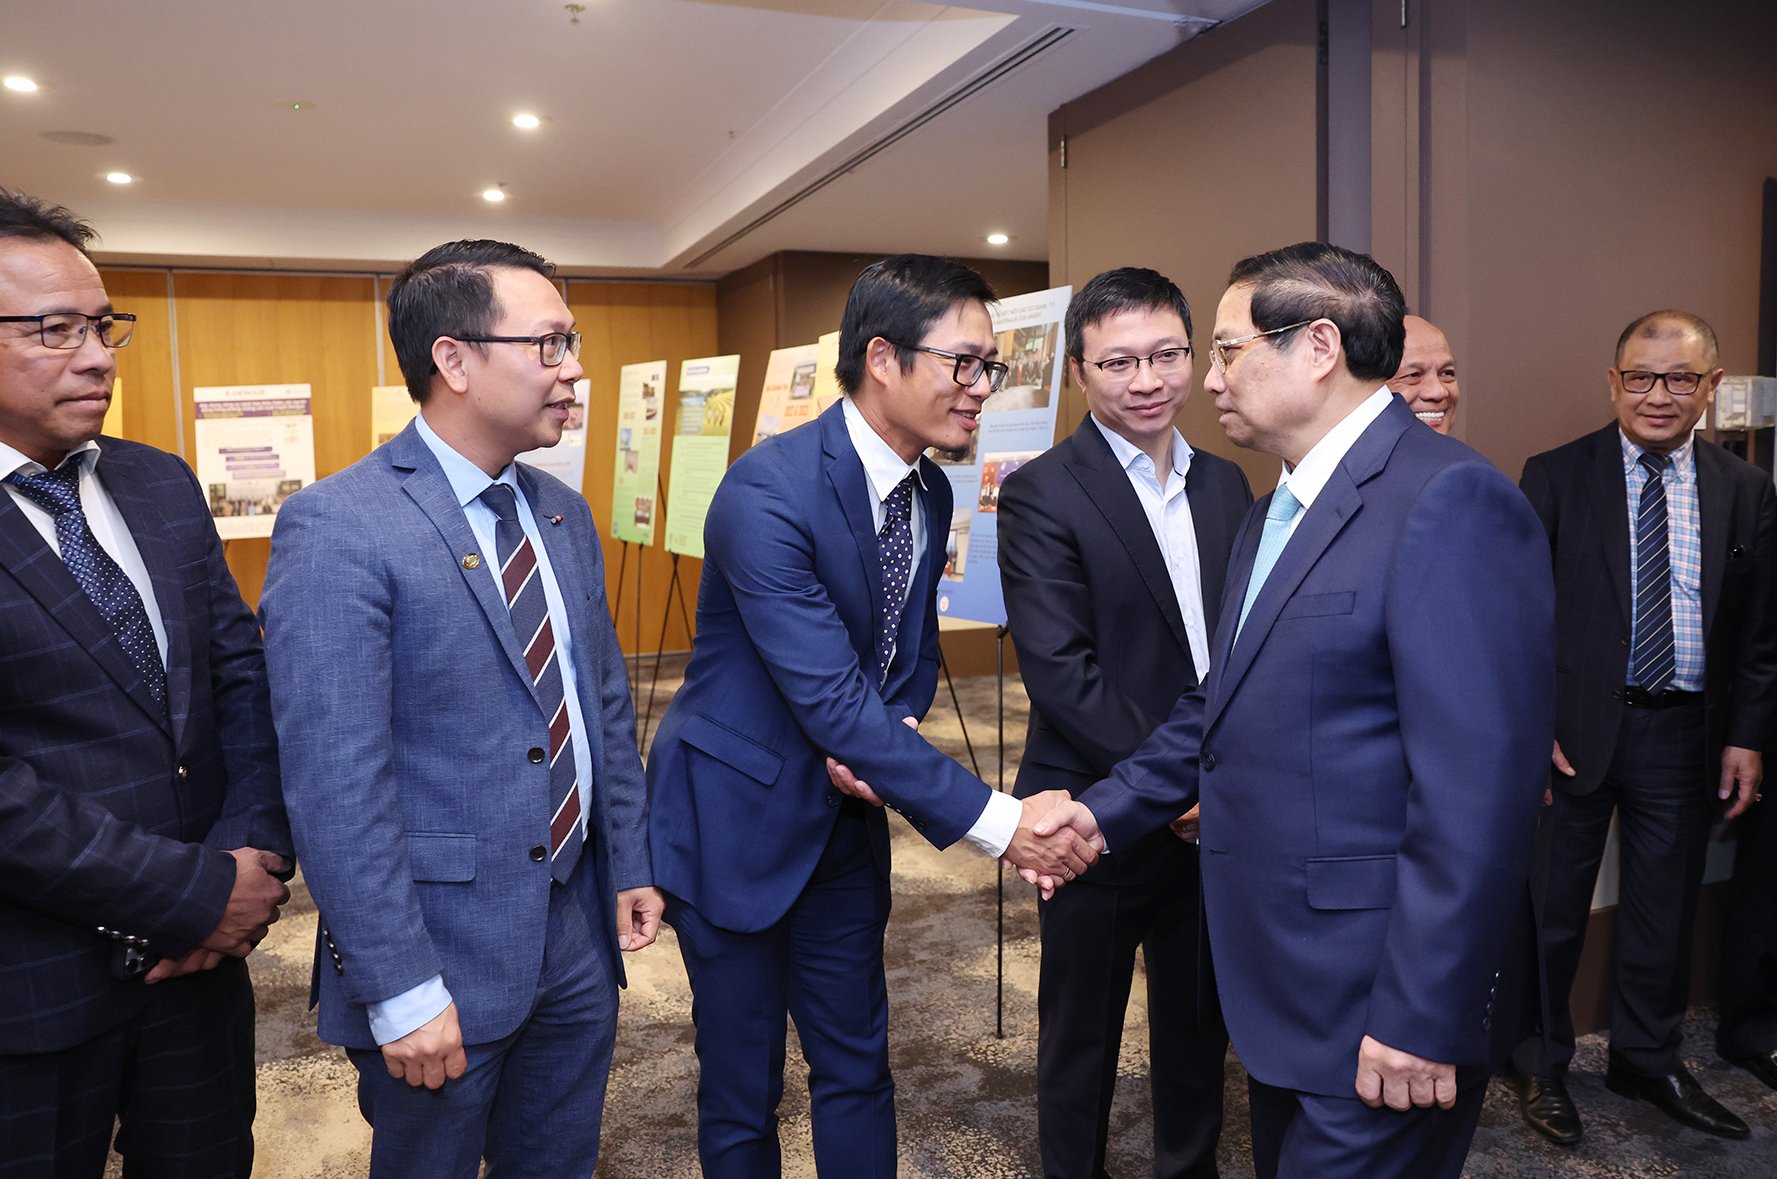 Thủ tướng ghi nhận, đánh giá cao các thành tựu gần đây của Hội Doanh nhân Việt Nam tại Australia trong hoạt động kinh doanh, đóng góp cho sự phát triển kinh tế của hai nước, đồng thời giúp kết nối các doanh nghiệp Việt Nam tại Australia - Ảnh: VGP/Nhật Bắc